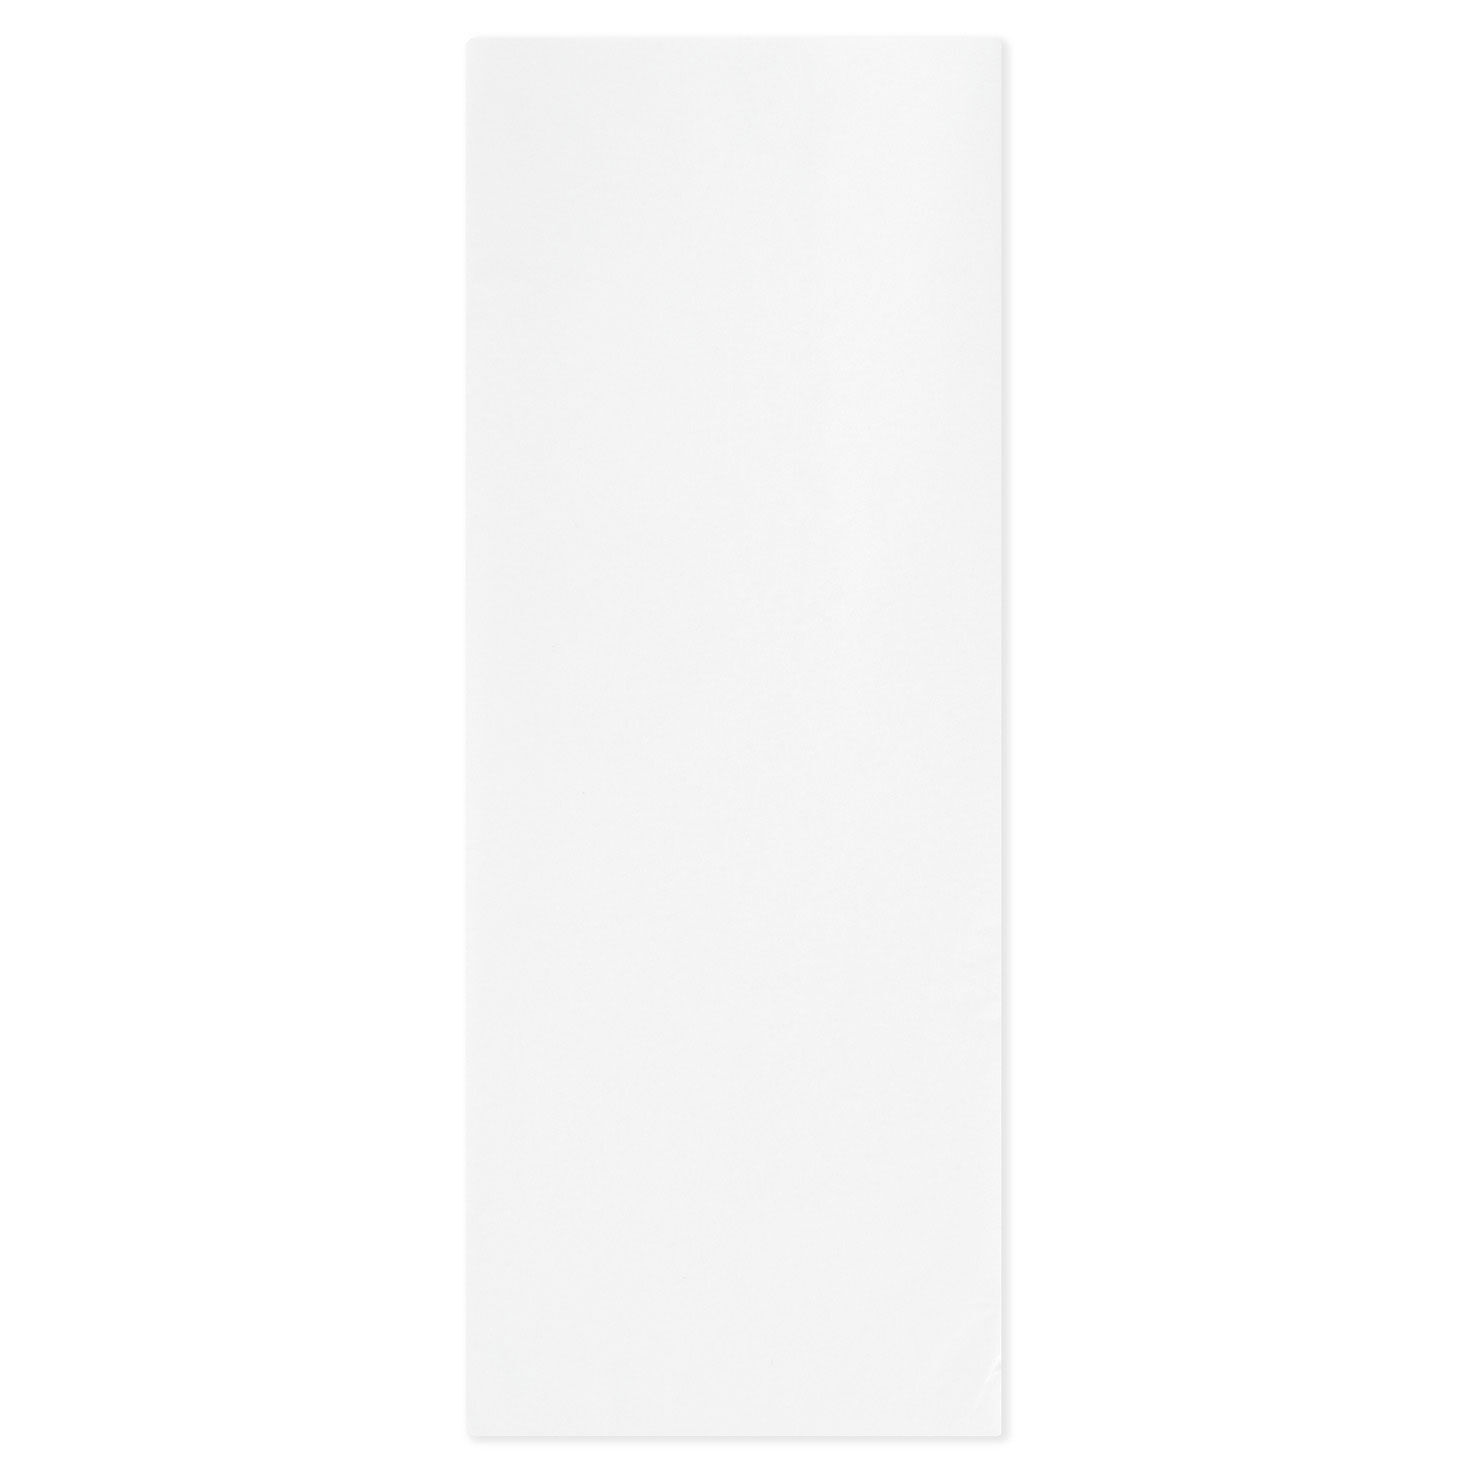 Bulk White Tissue Paper, 100 sheets - Tissue - Hallmark